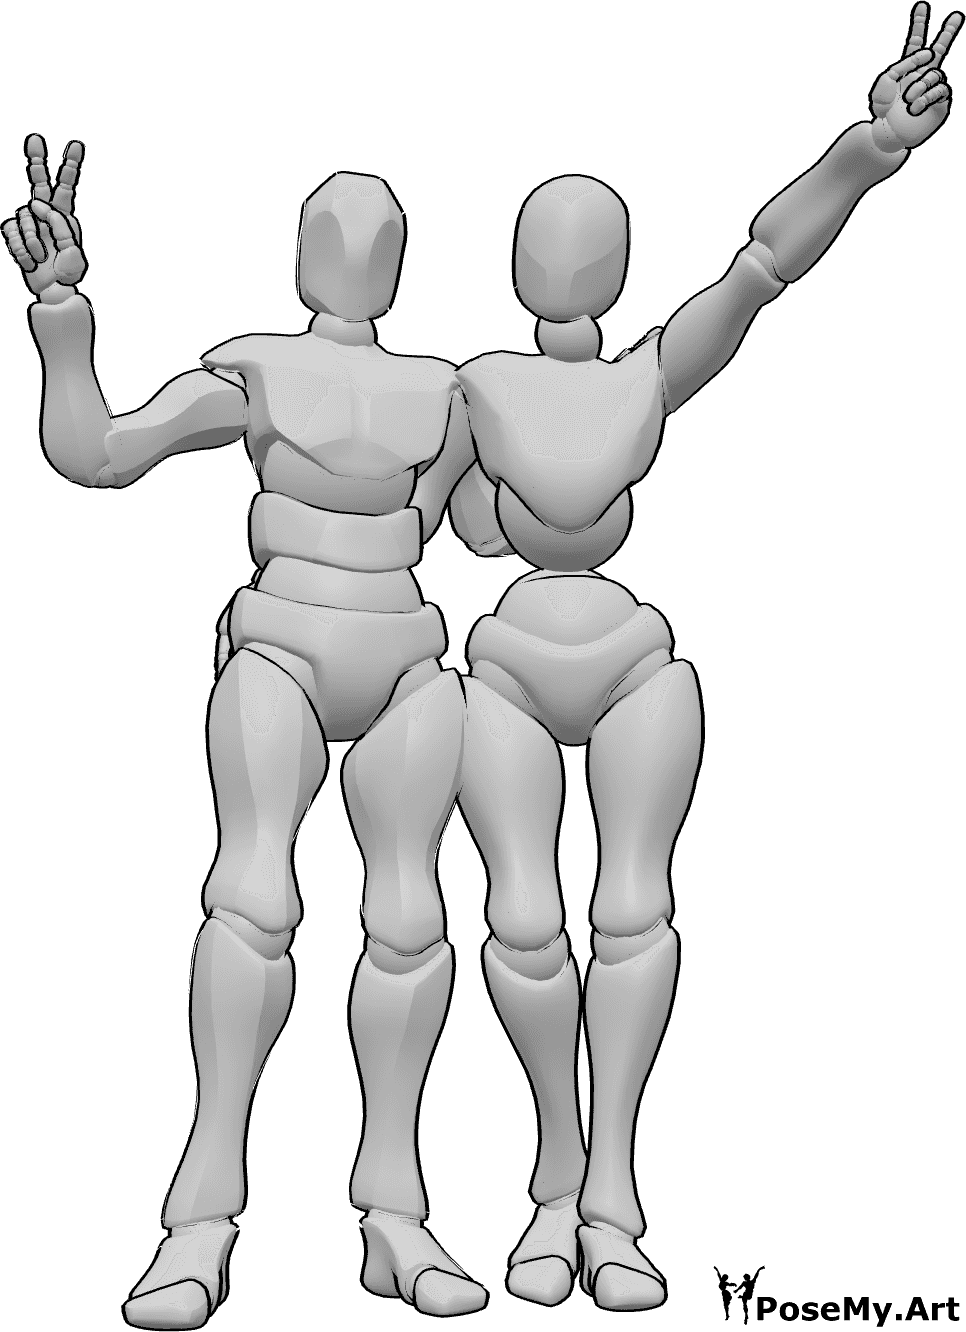 Référence des poses- Femme homme signe de paix pose - Une femme et un homme se tiennent debout, s'étreignent et font le signe de la paix.